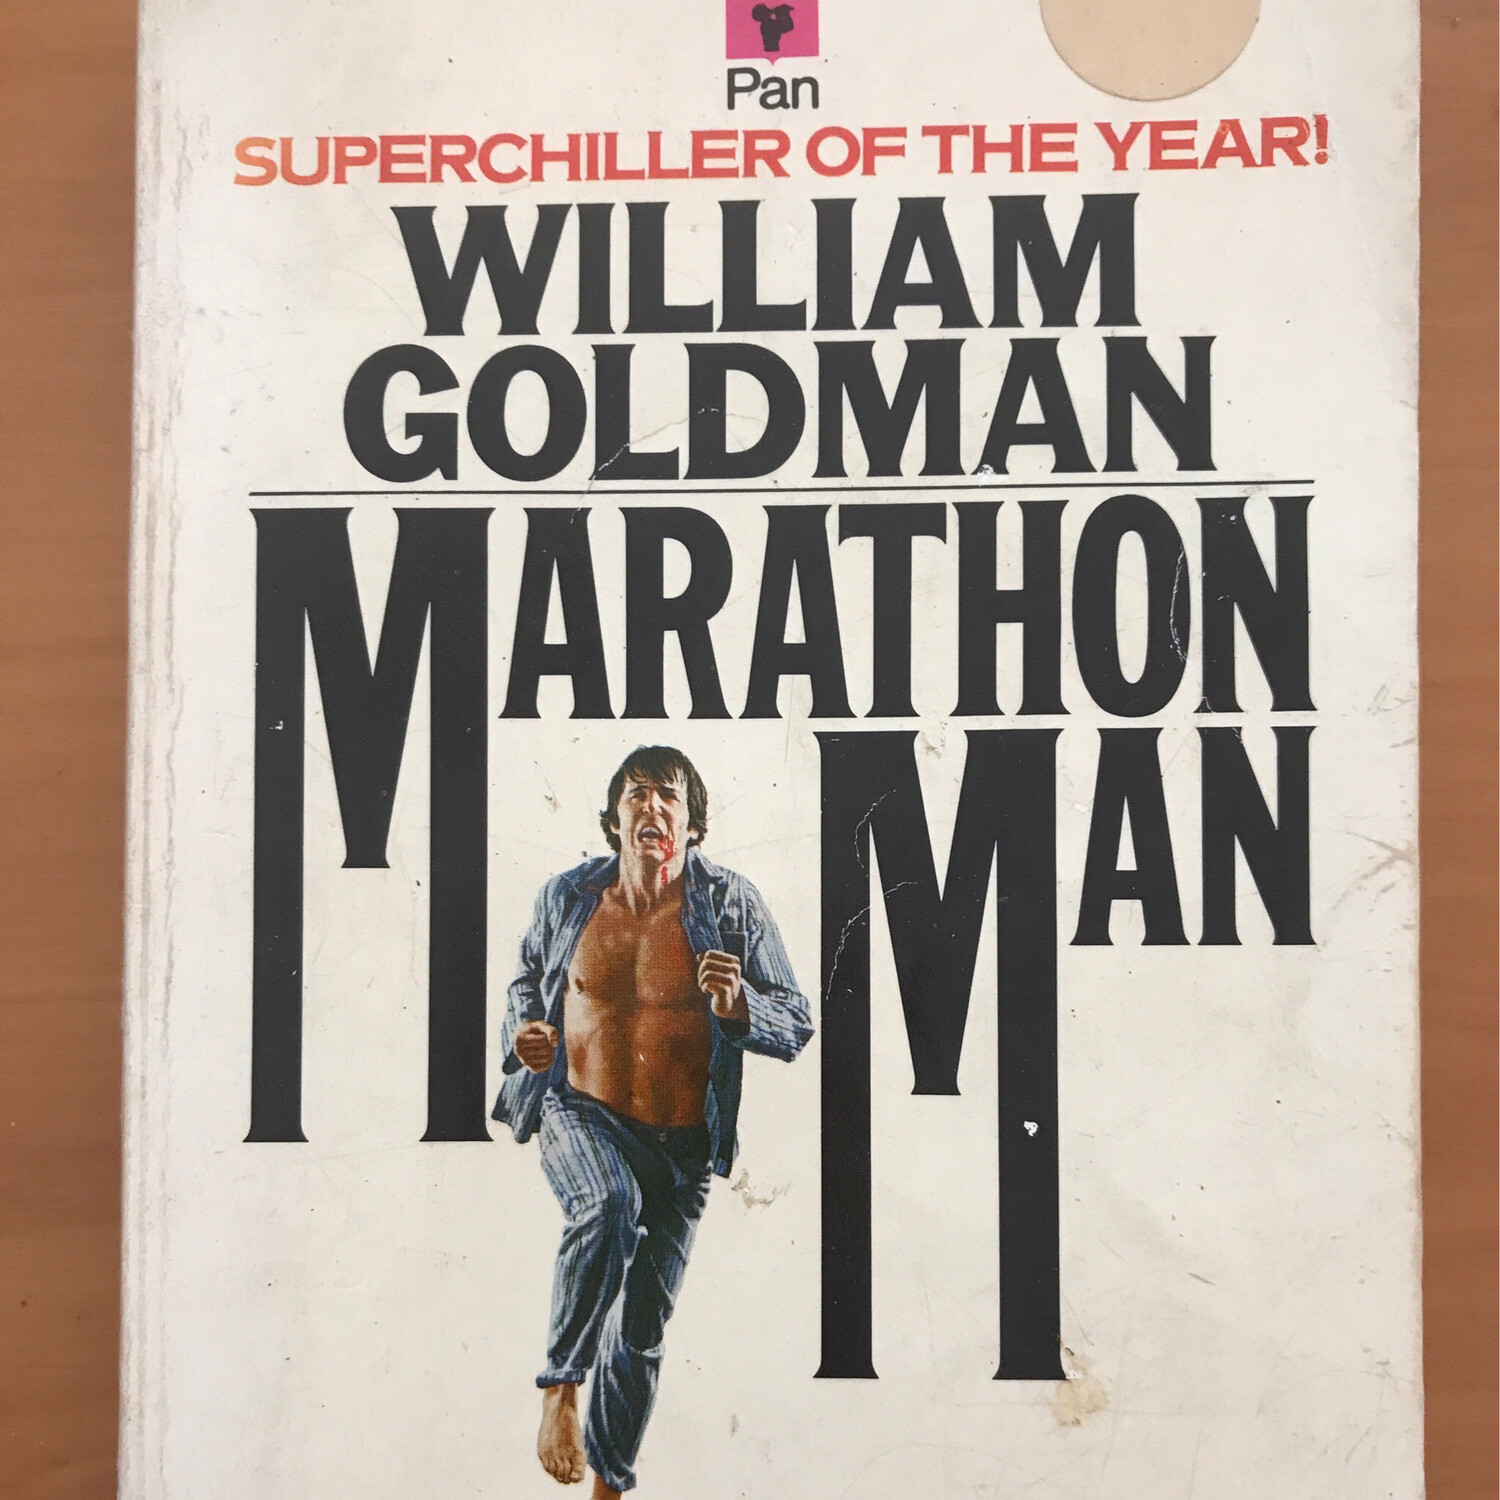 Marathon Man, William Goldman